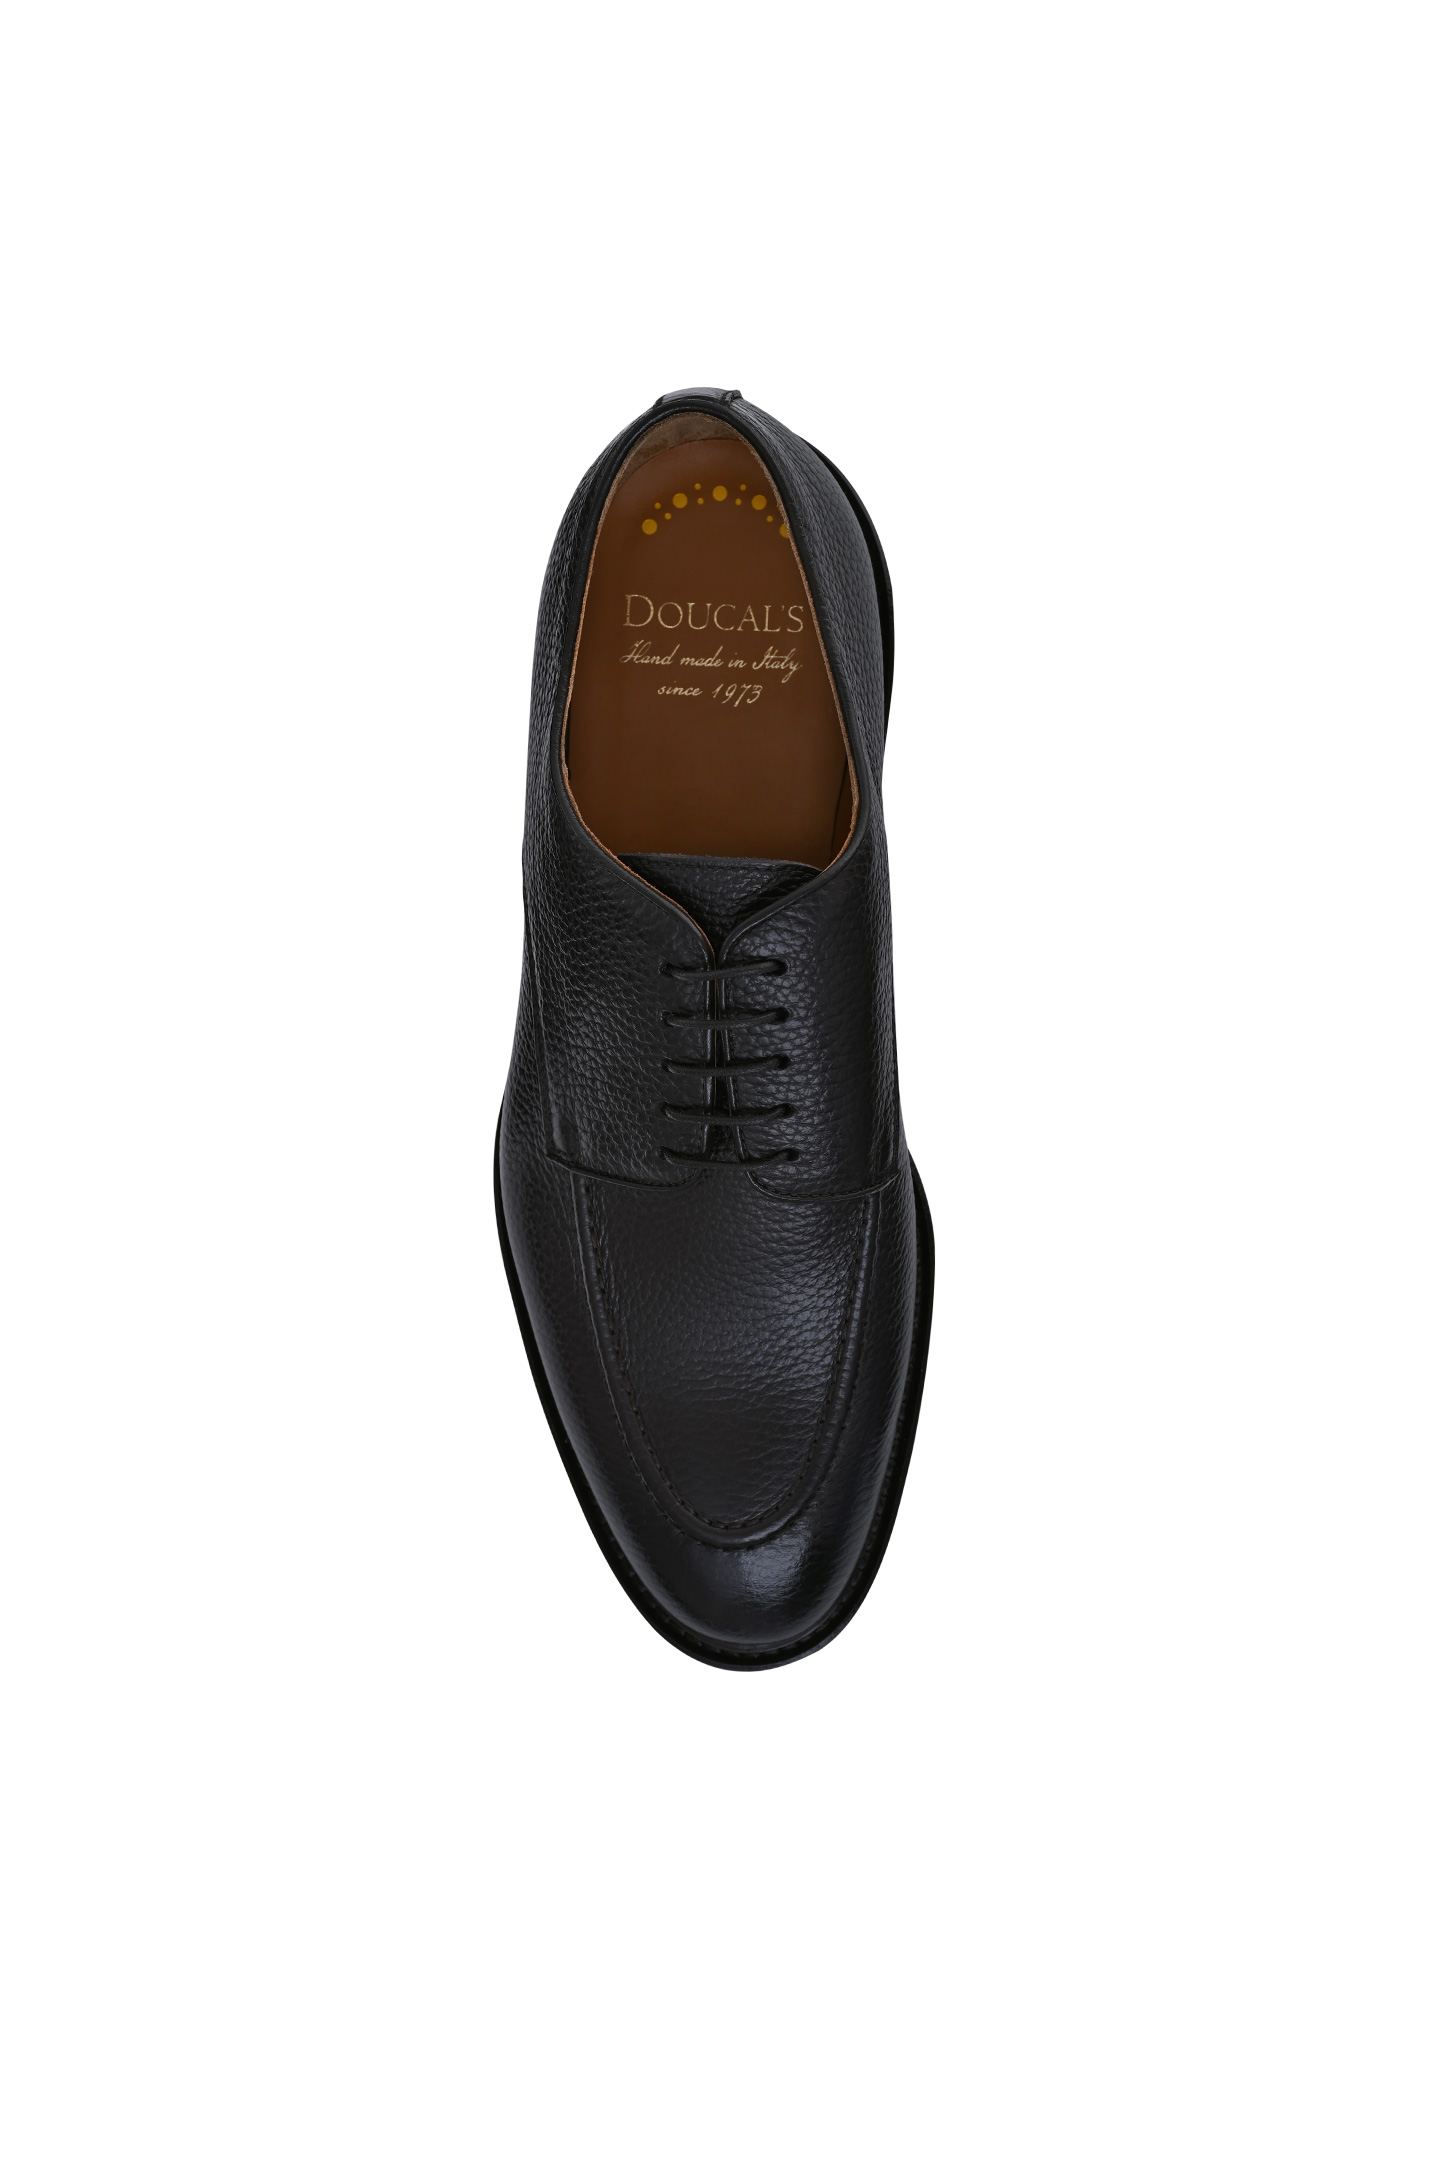 Туфли DOUCAL'S DU2728VEROUF019, цвет: Темно-коричневый, Мужской